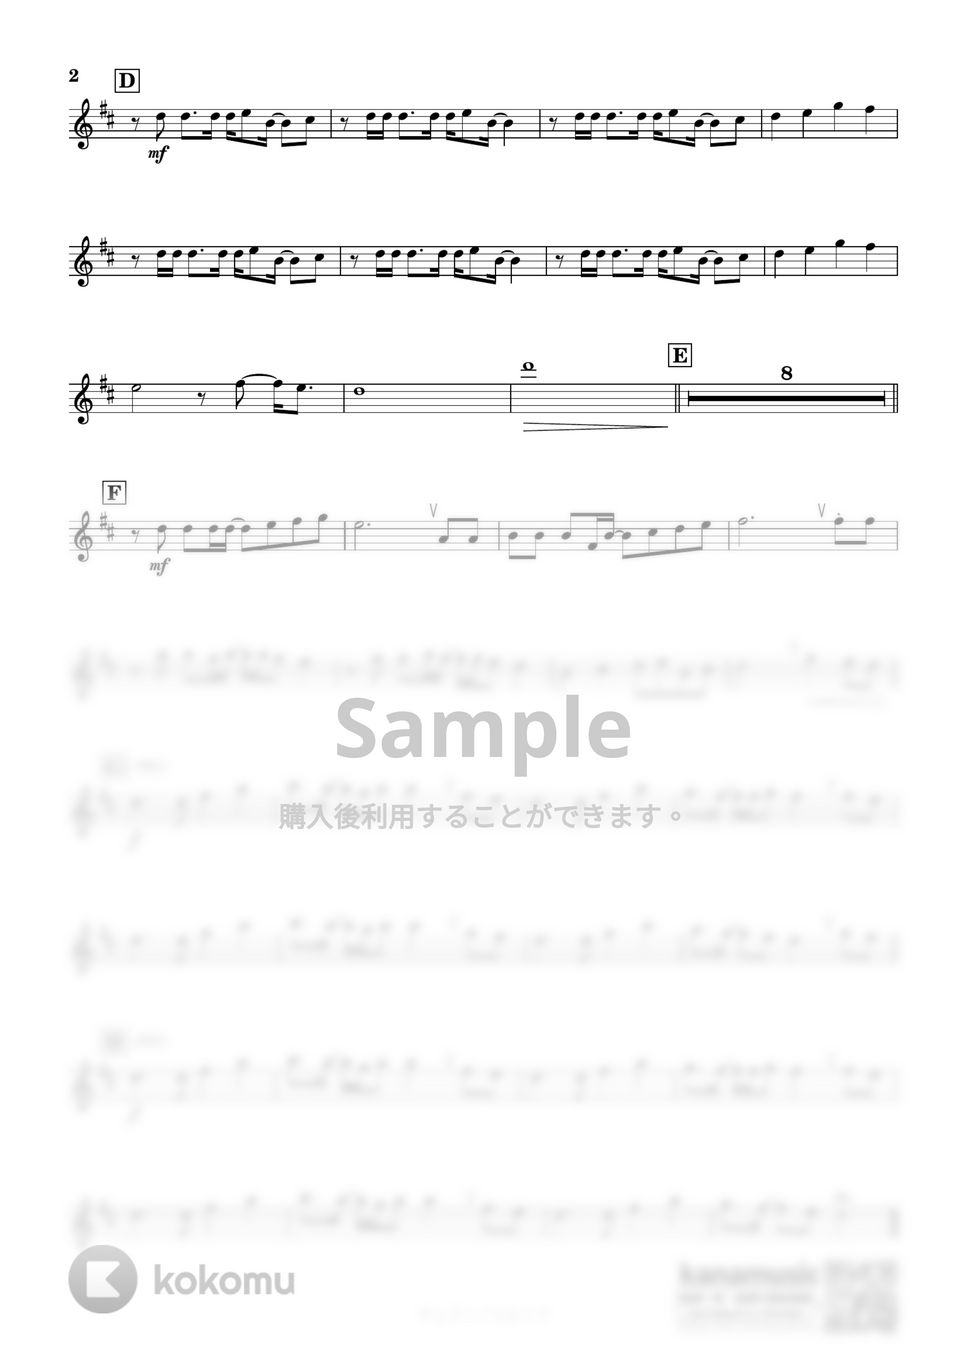 スピッツ - チェリー (B♭) by kanamusic